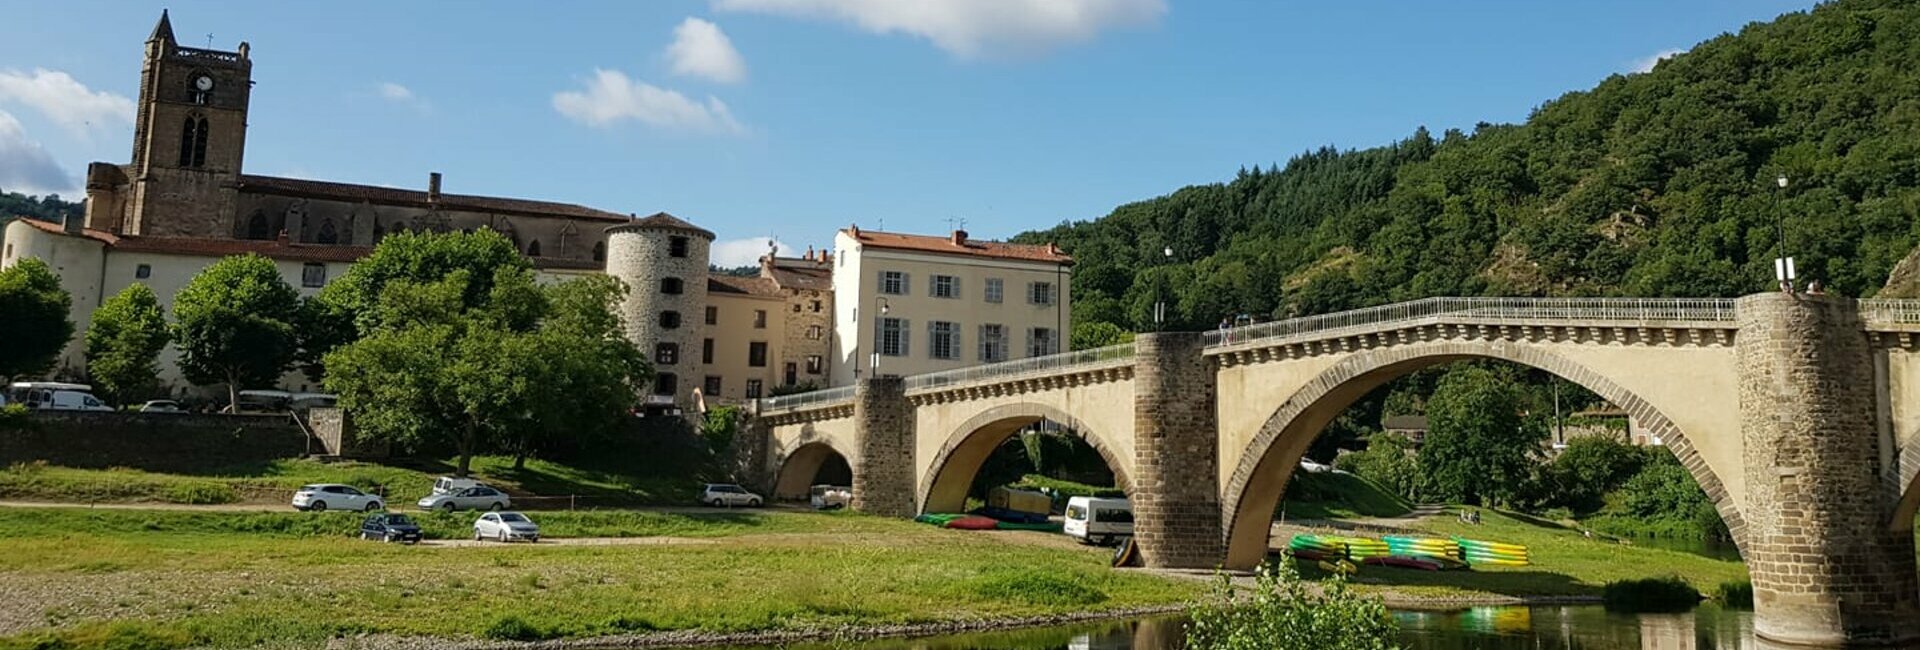 Lavoûte-chilhac, candidat au titre de plus beau village de France, tourisme haut Allier